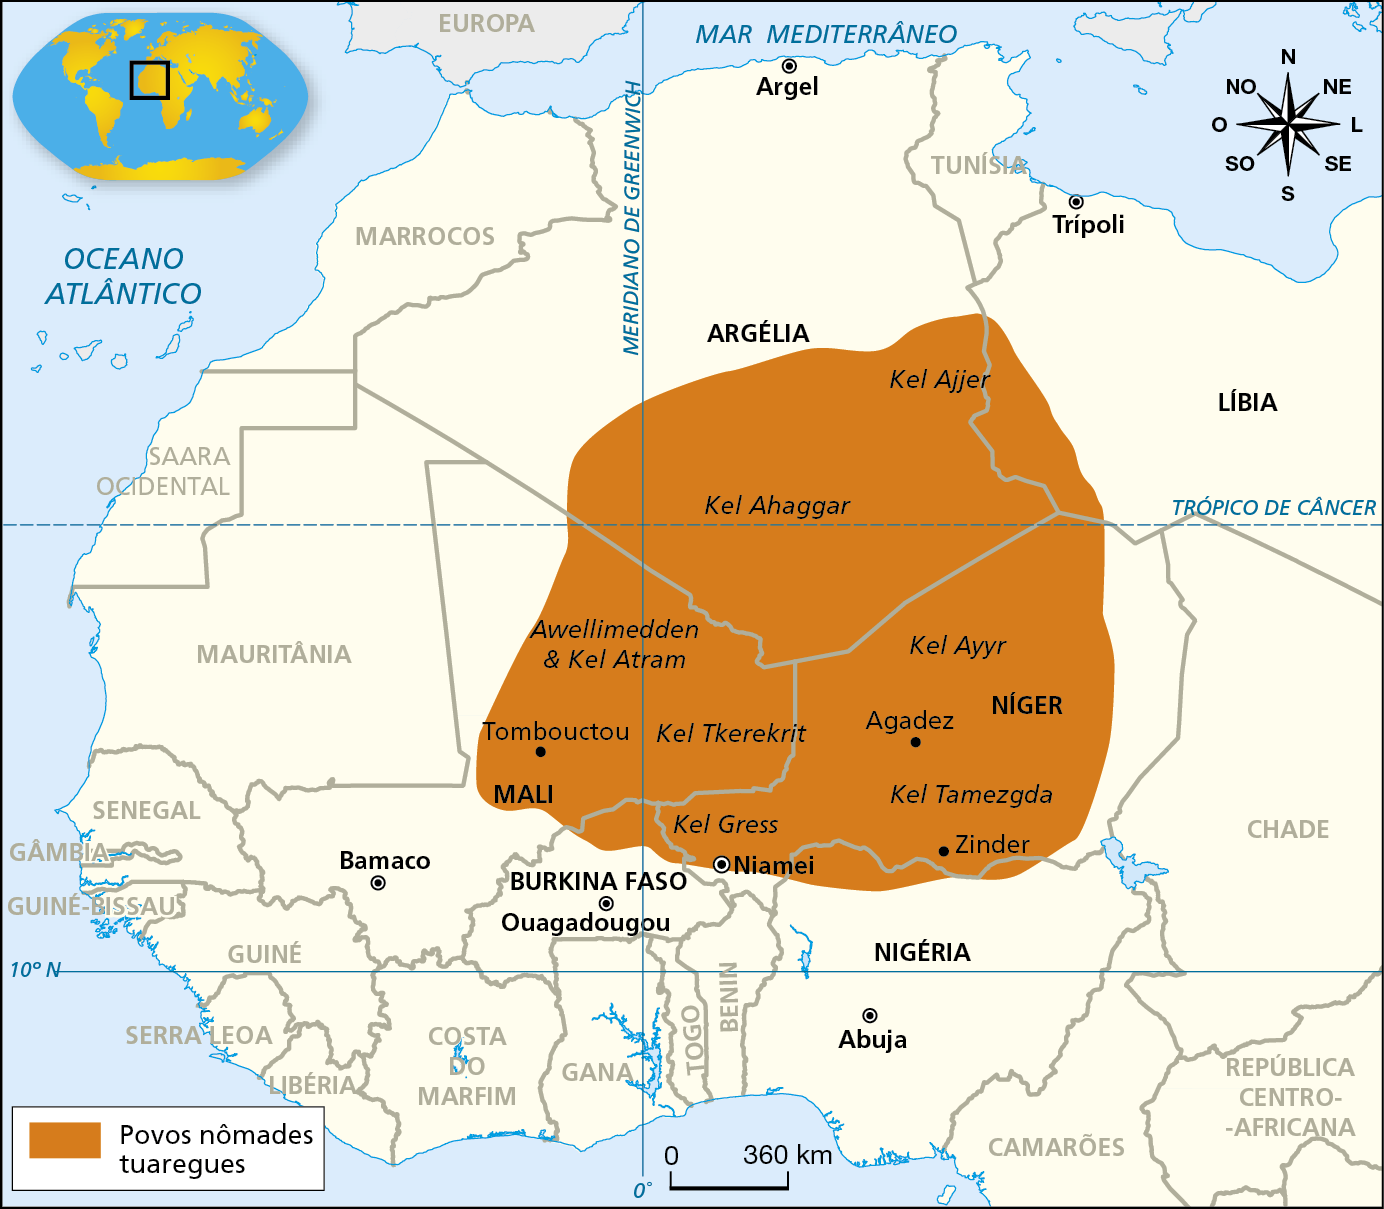 Mapa. África: território ocupado pelos povos nômades tuaregues no Deserto do Saara
Mapa que destaca a região central e noroeste do continente africano, indicando as áreas ocupadas pelos povos nômades tuaregues. 
Em tom claro, os países da região, seus limites políticos. Indicadas por meio de um ícone redondo, as capitais Argel, da Argélia, Trípolo, da Líbia, Niamel, do Níger, Bamaco, do Mali, Abuja, da Nigéria e Ouagadougou, de Burkina Faso. 

Por meio de uma mancha no centro do mapa, as áreas ocupadas pelos povos tuaregues. Na Argélia: nas áreas de Kel Arragar e Kel Ajjer. No Mali: Auelimeden e Kel Atram e Kel Tiquerecrit. No Níger: Kel Tamezgda, Kel Air e Kel Gress. 
Na parte superior direita, rosa dos ventos; na parte inferior, escala de 0 a 360 quilômetros.